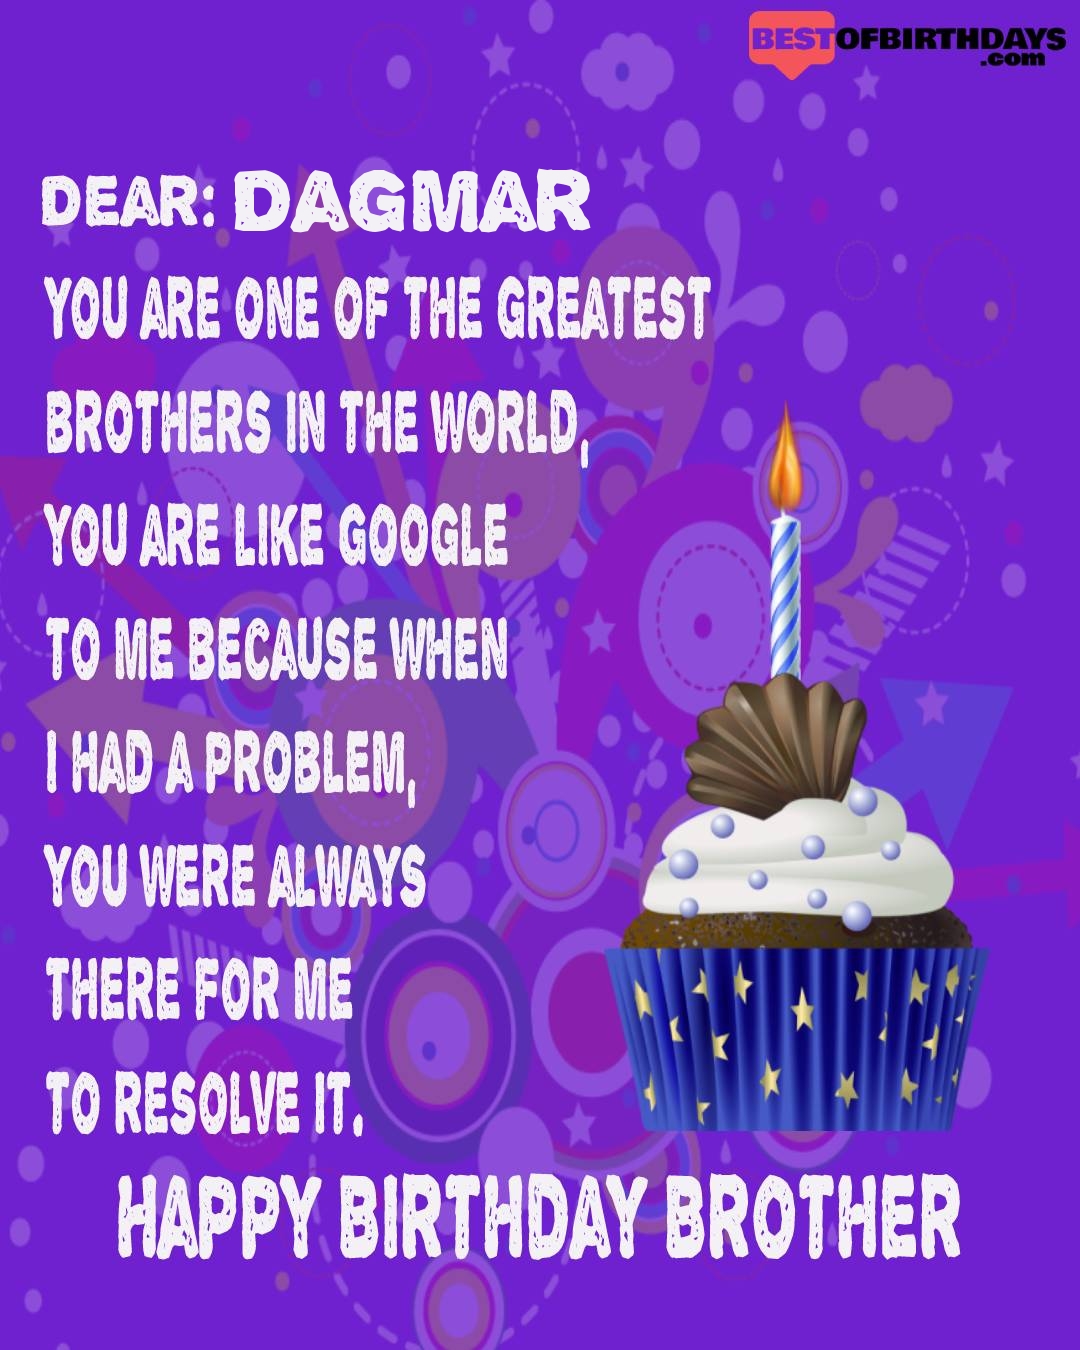 Happy birthday dagmar bhai brother bro